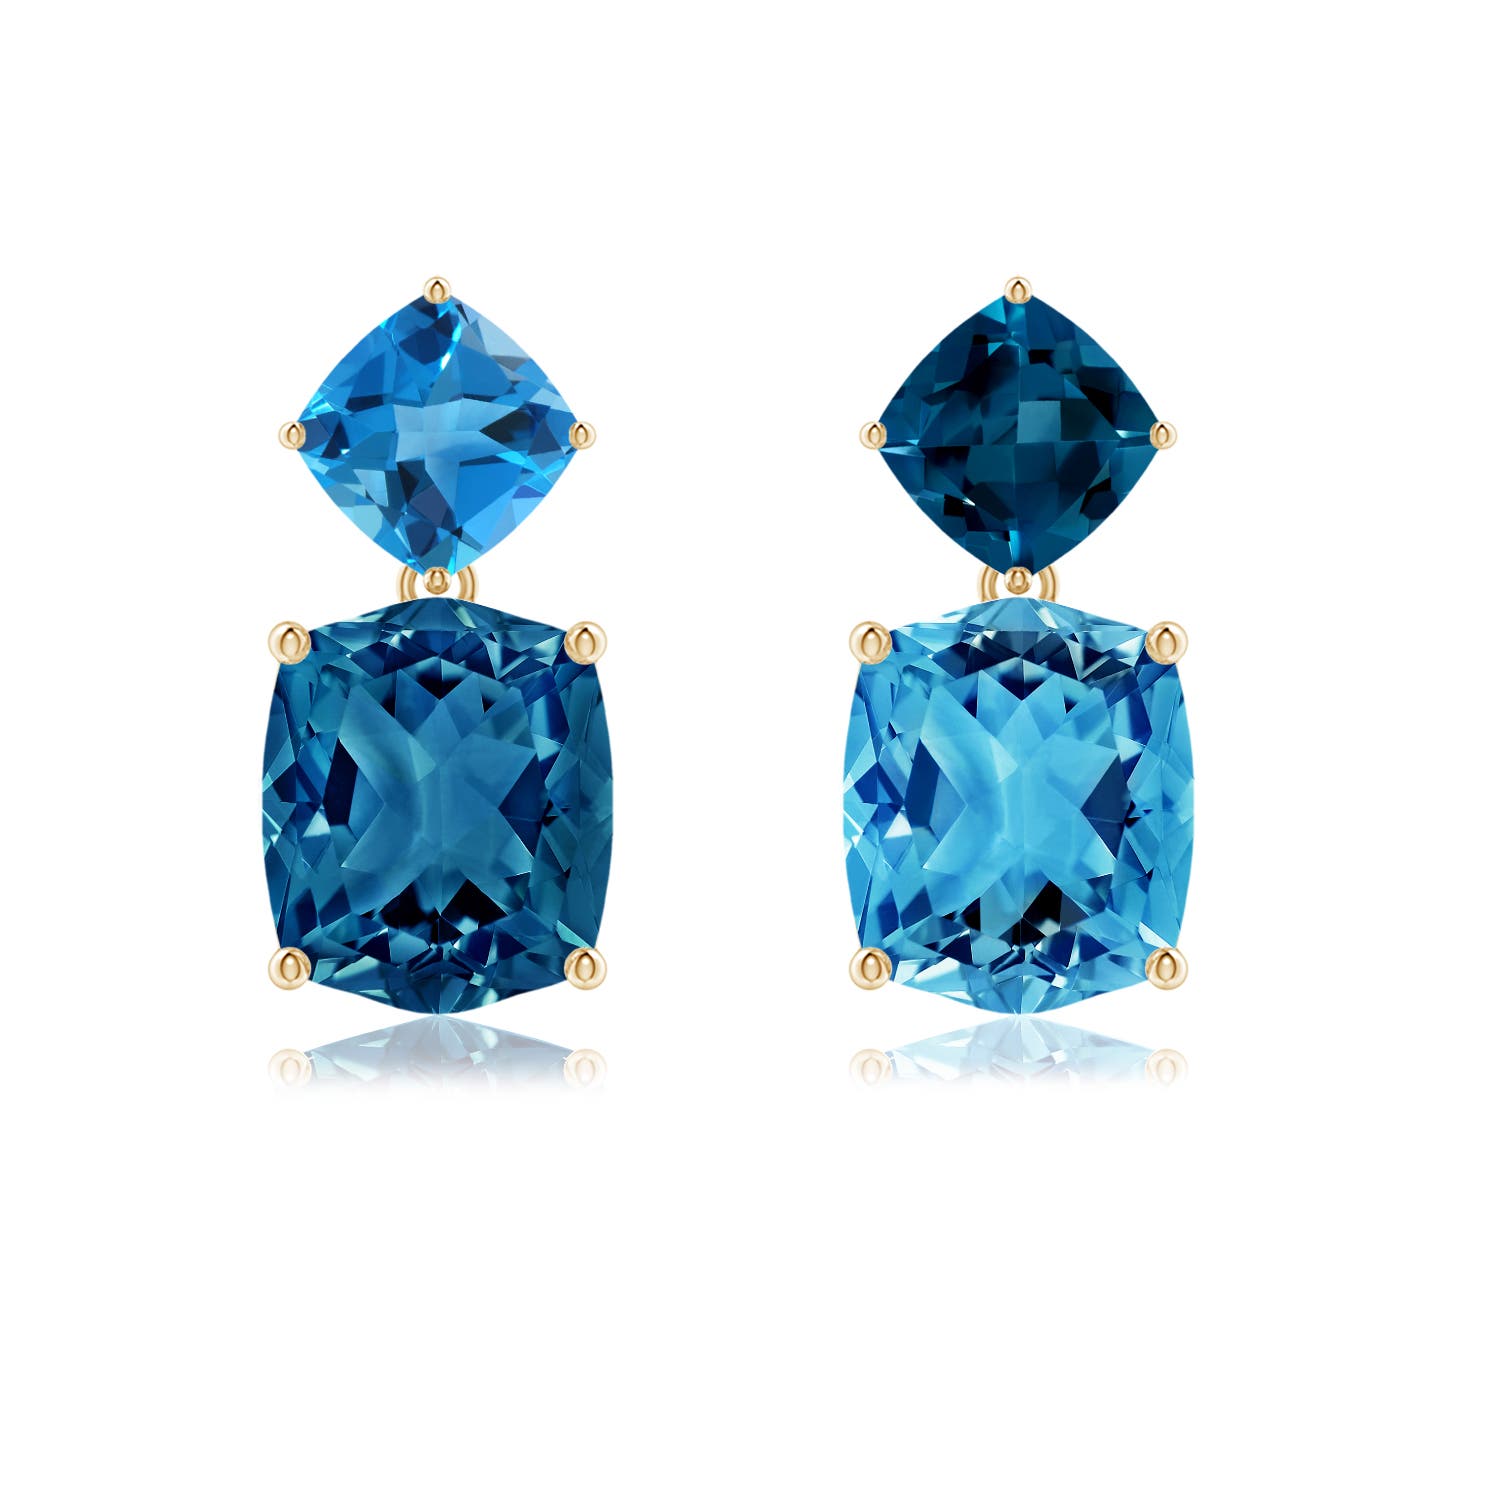 10kt Rose Gold London Blue Topaz Earrings | Gold Mine Jewelry